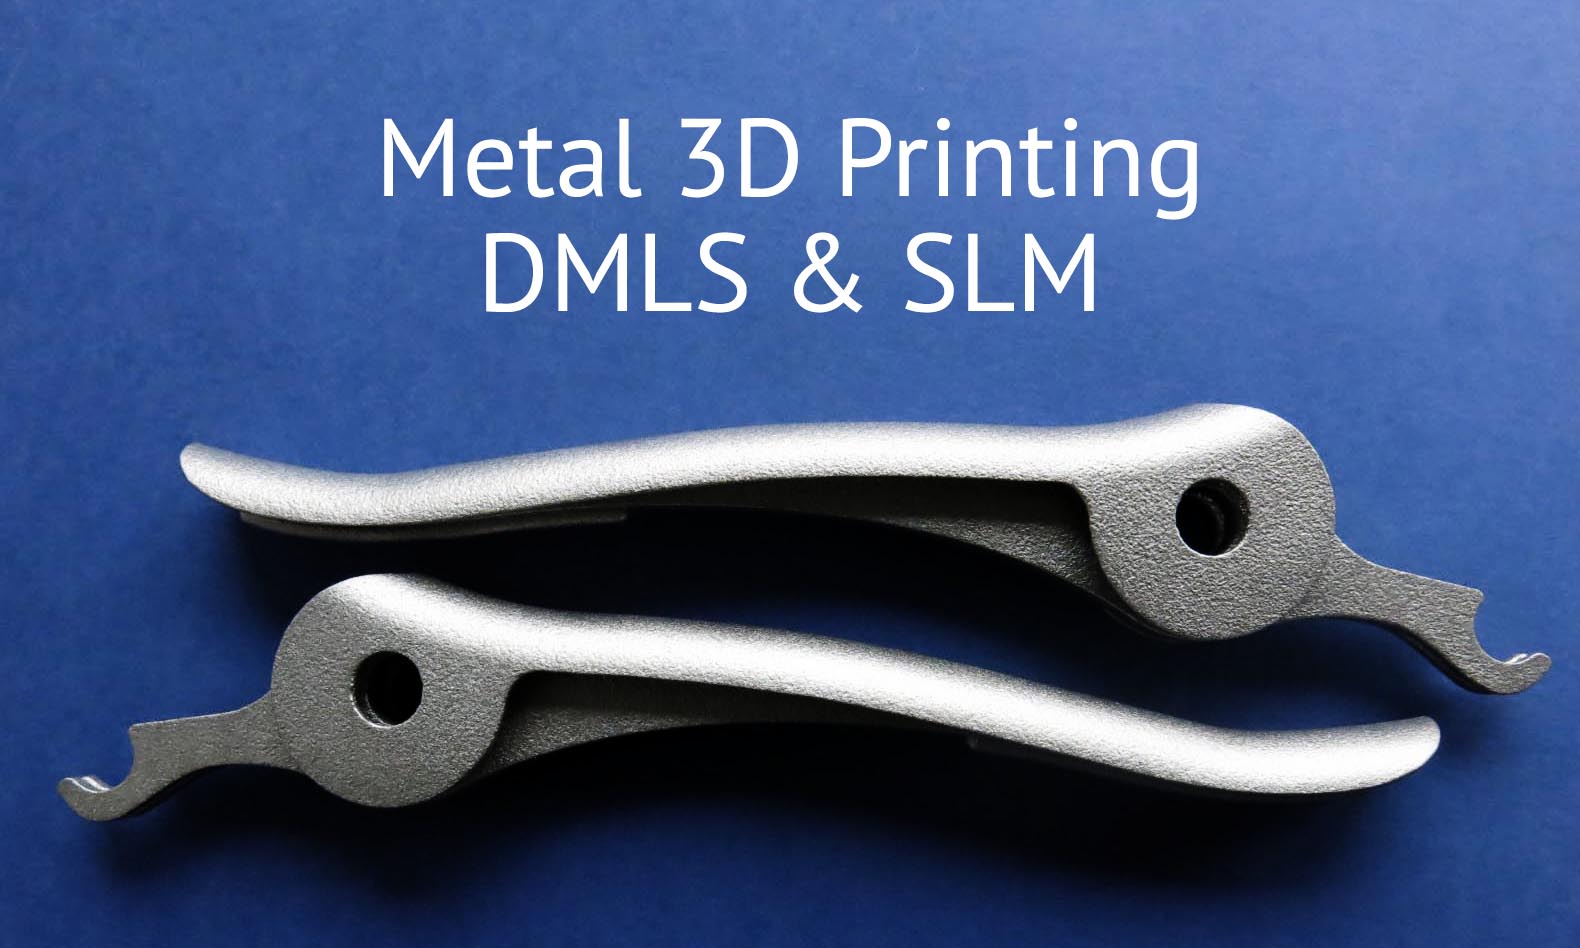 Tout connaître sur l’impression 3D métal en 7 questions